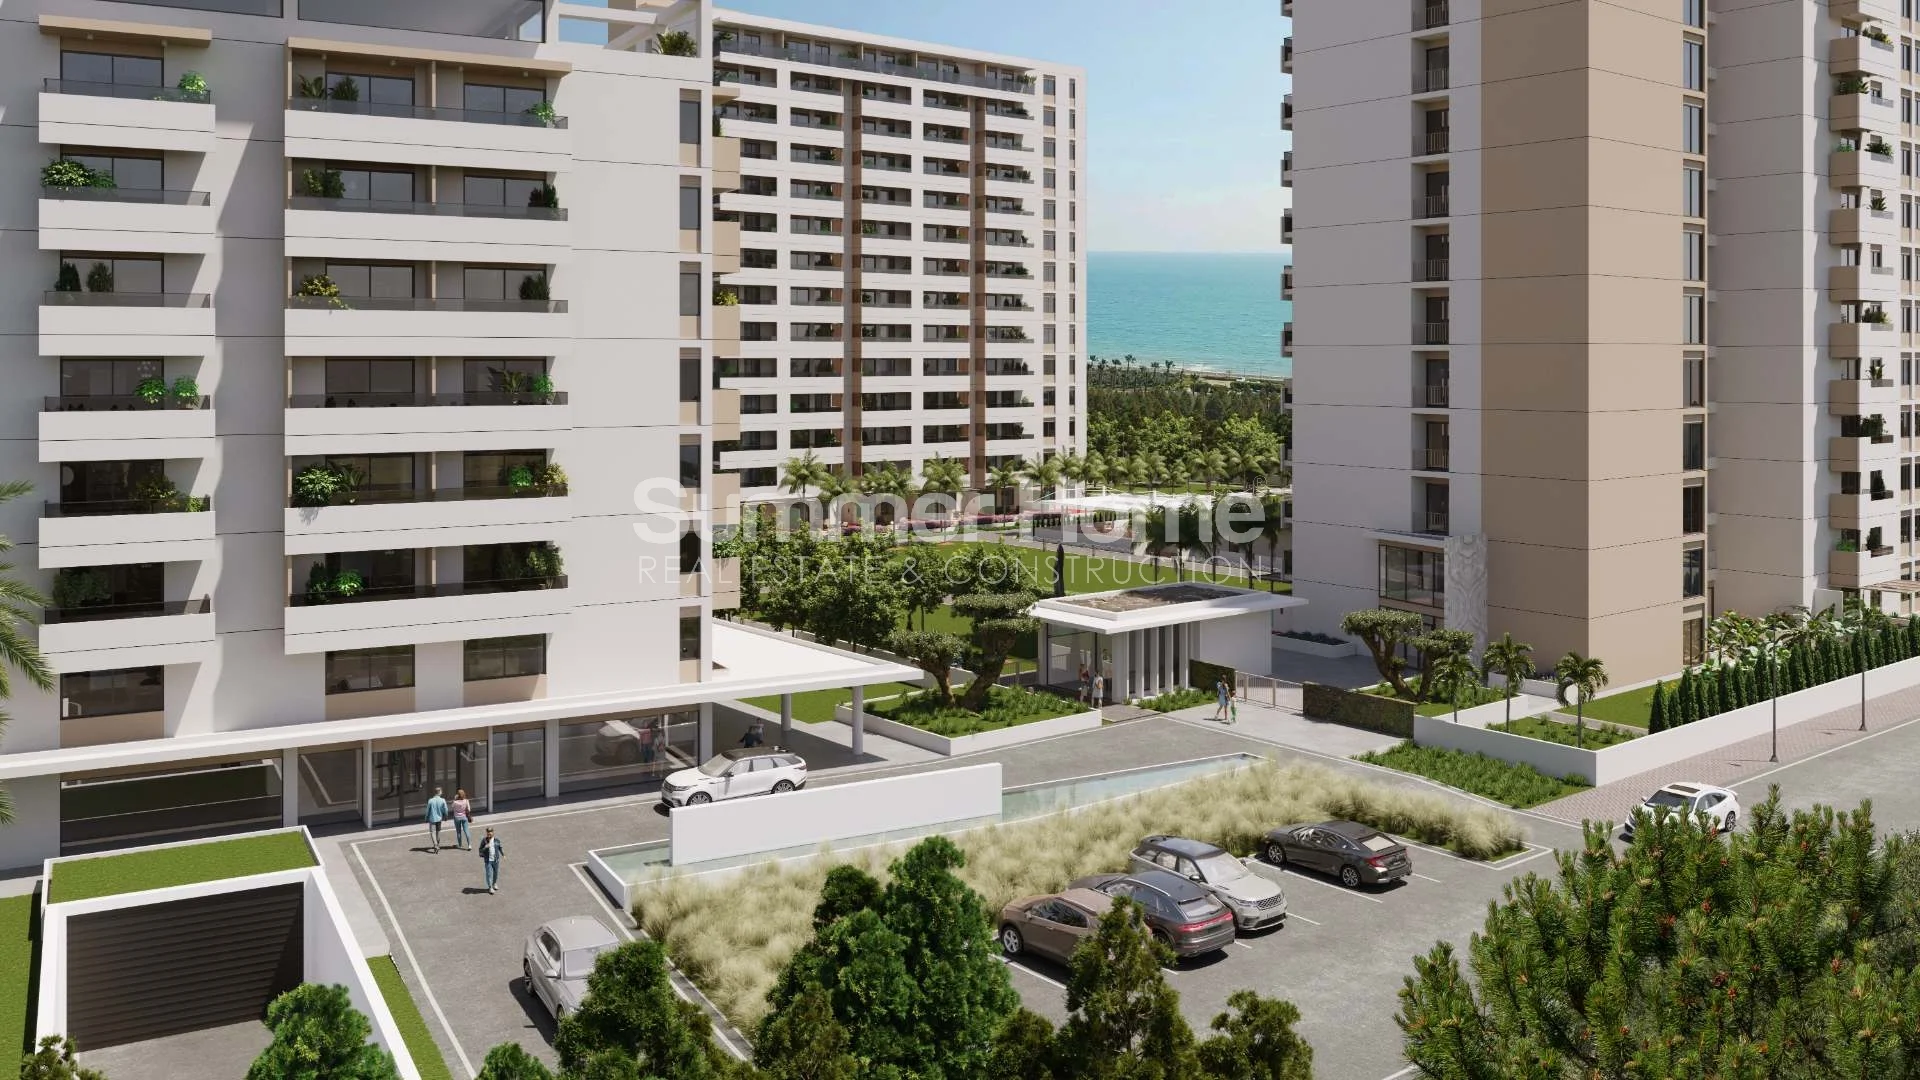 Sea View Apartments in Lush Setting of Mezitli, Mersin General - 4